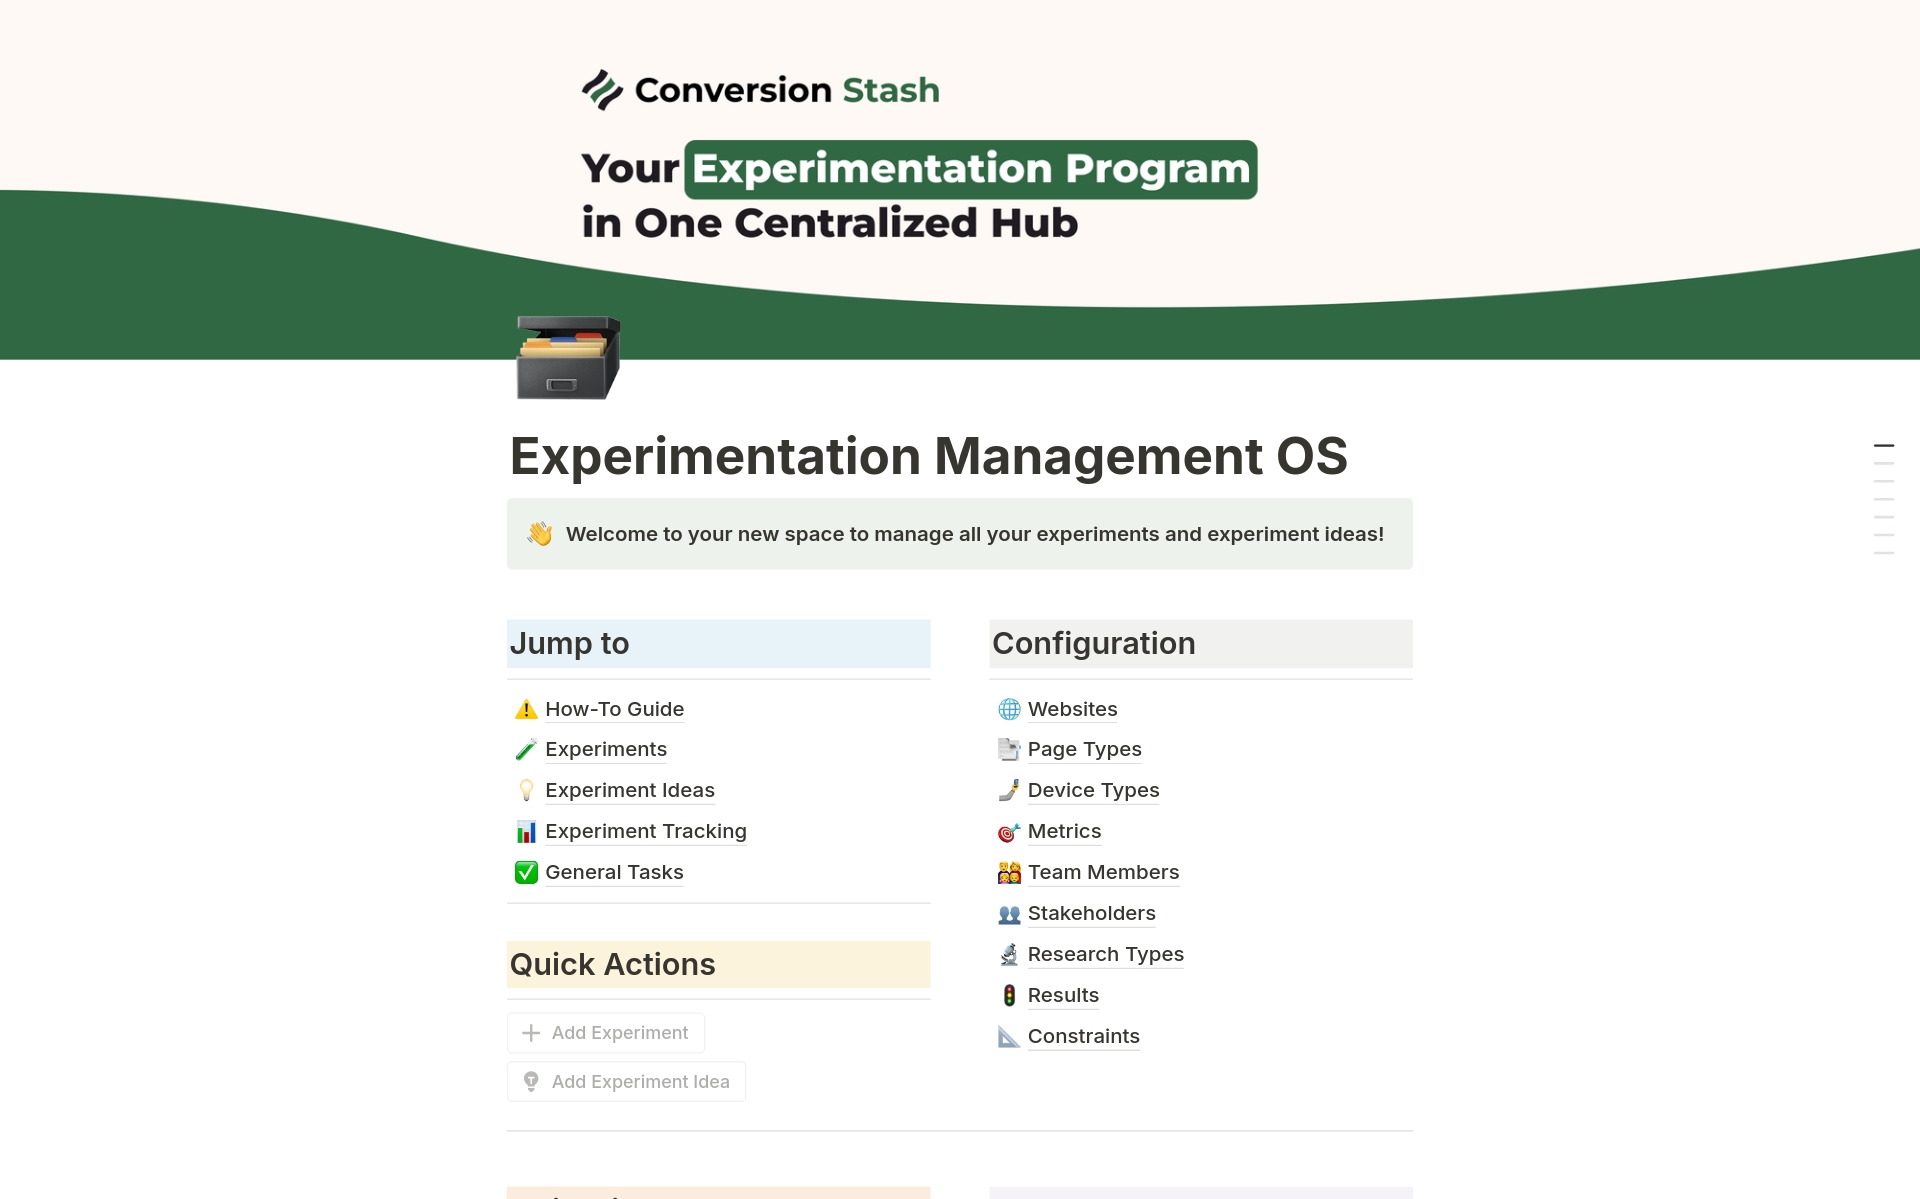 Vista previa de una plantilla para Experimentation Management OS